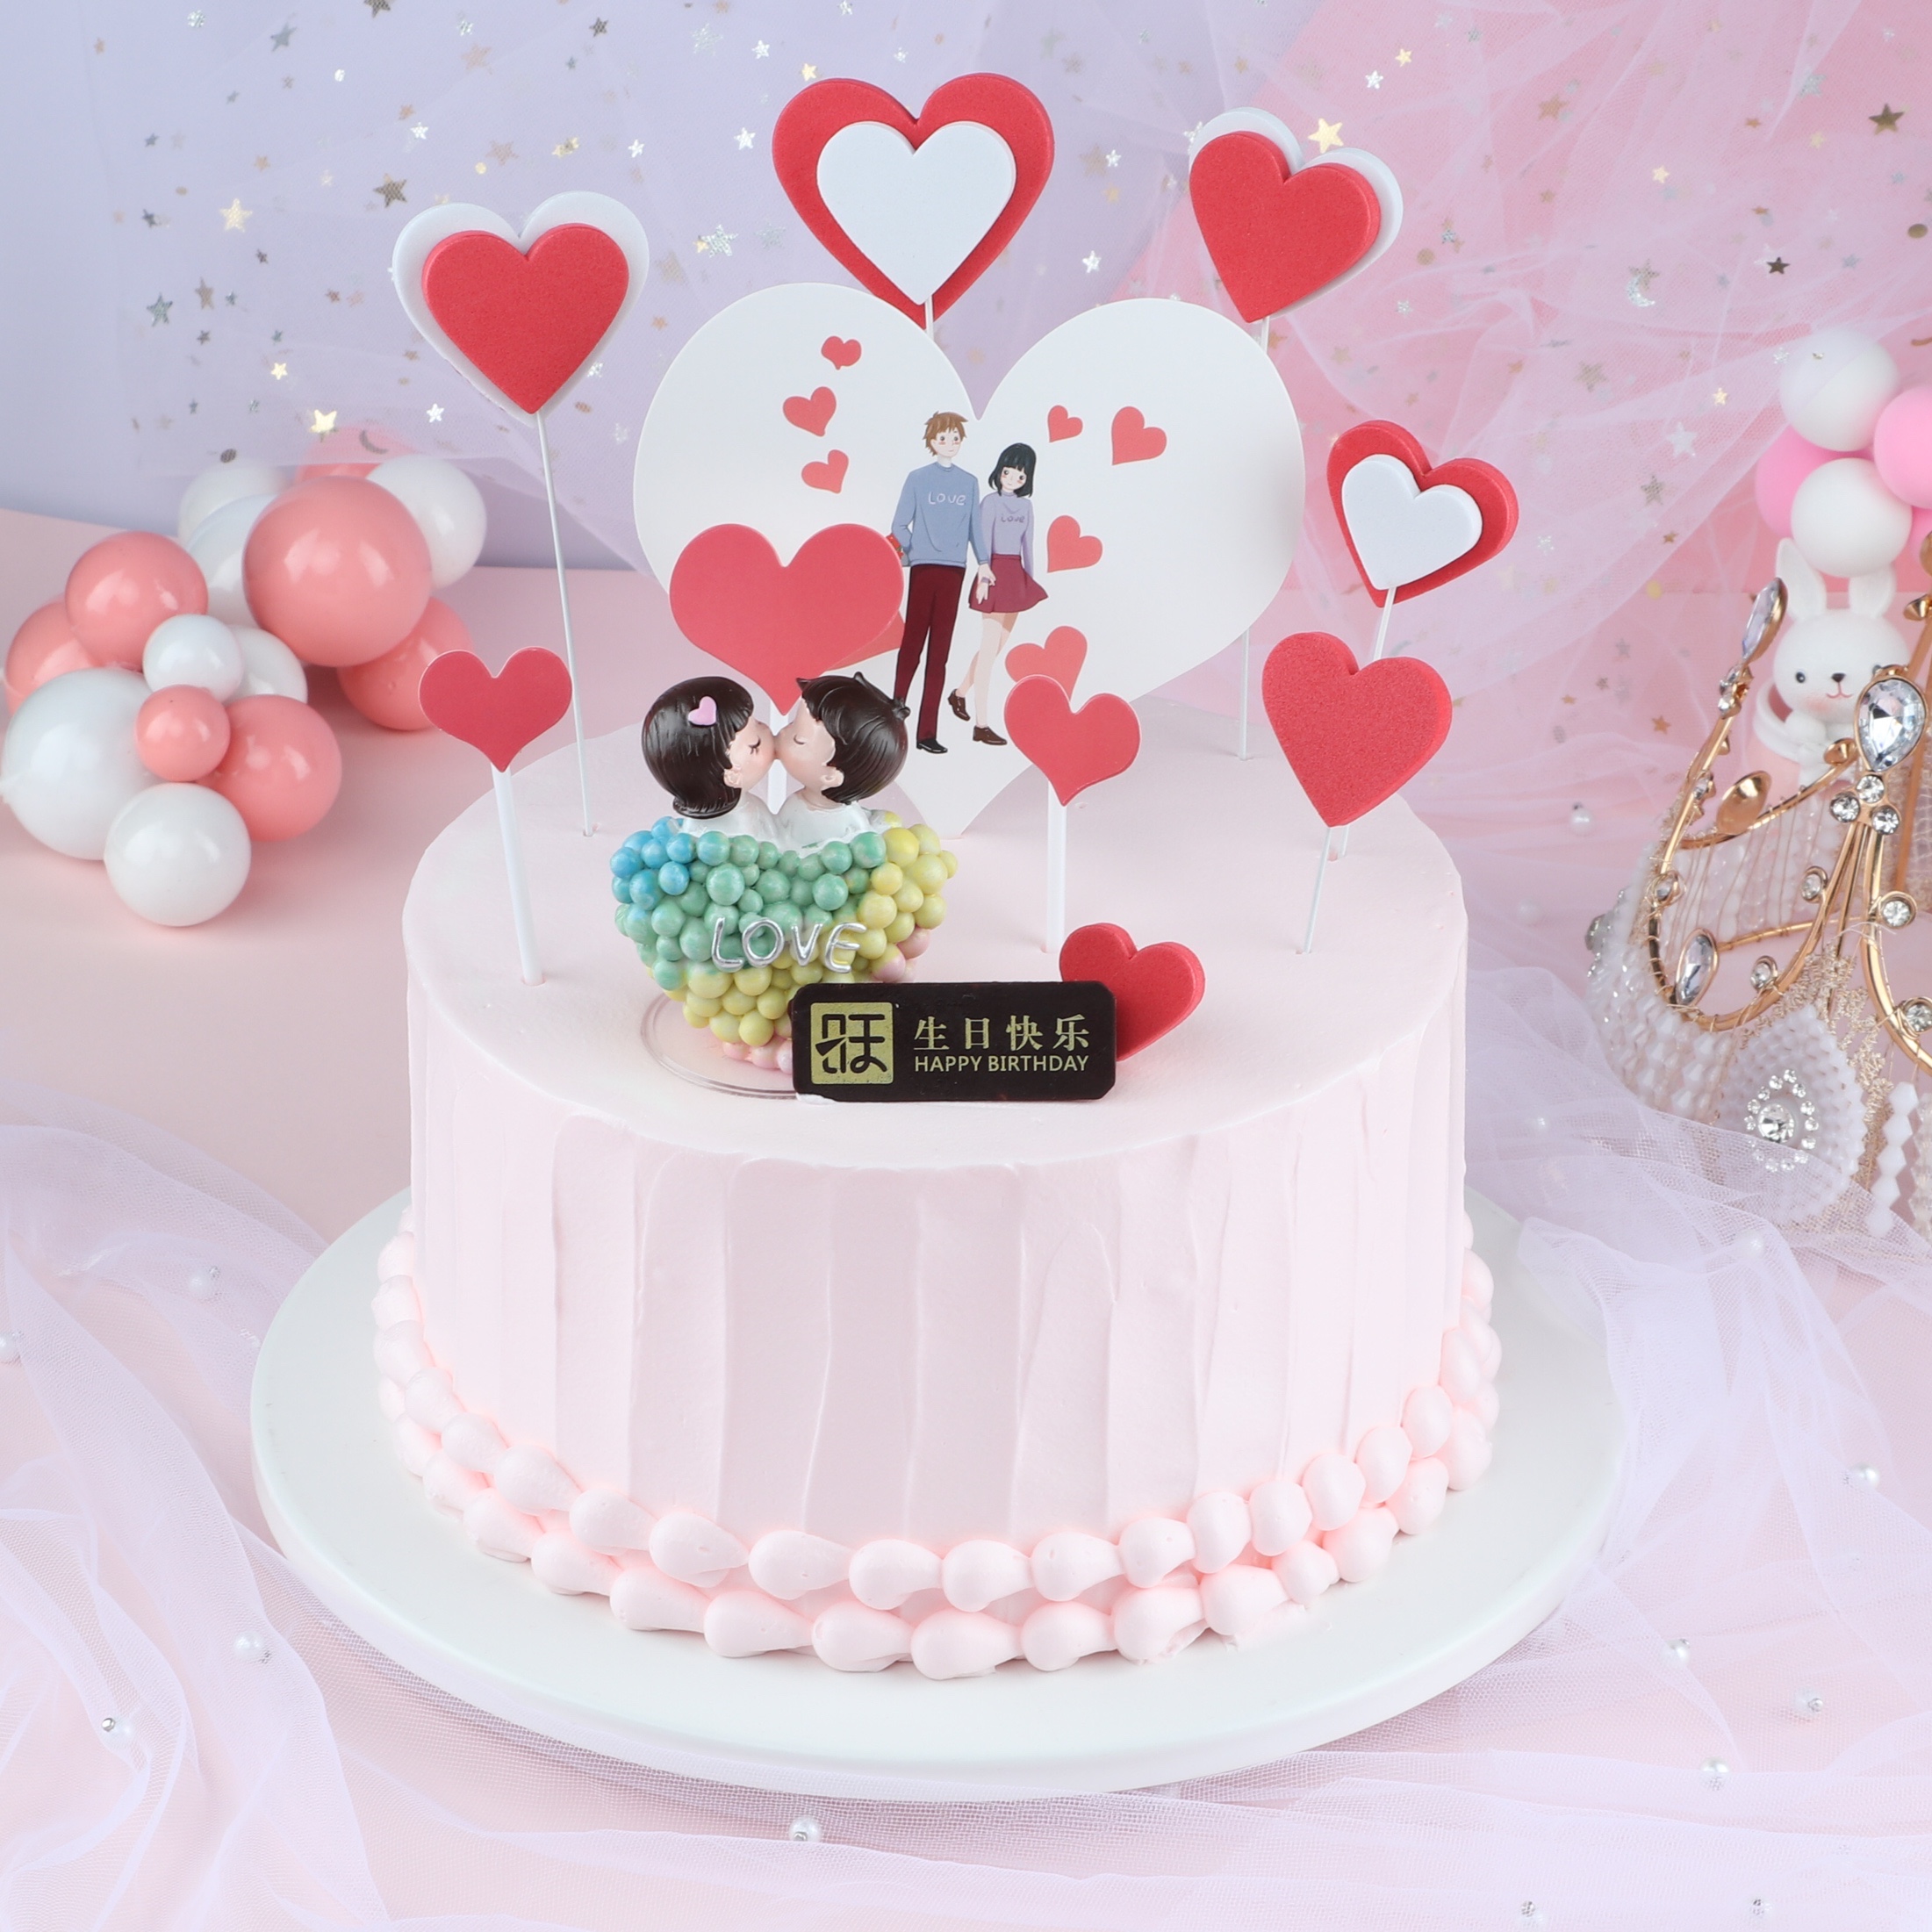 纪念日蛋糕一款适合节表白的浪漫蛋糕